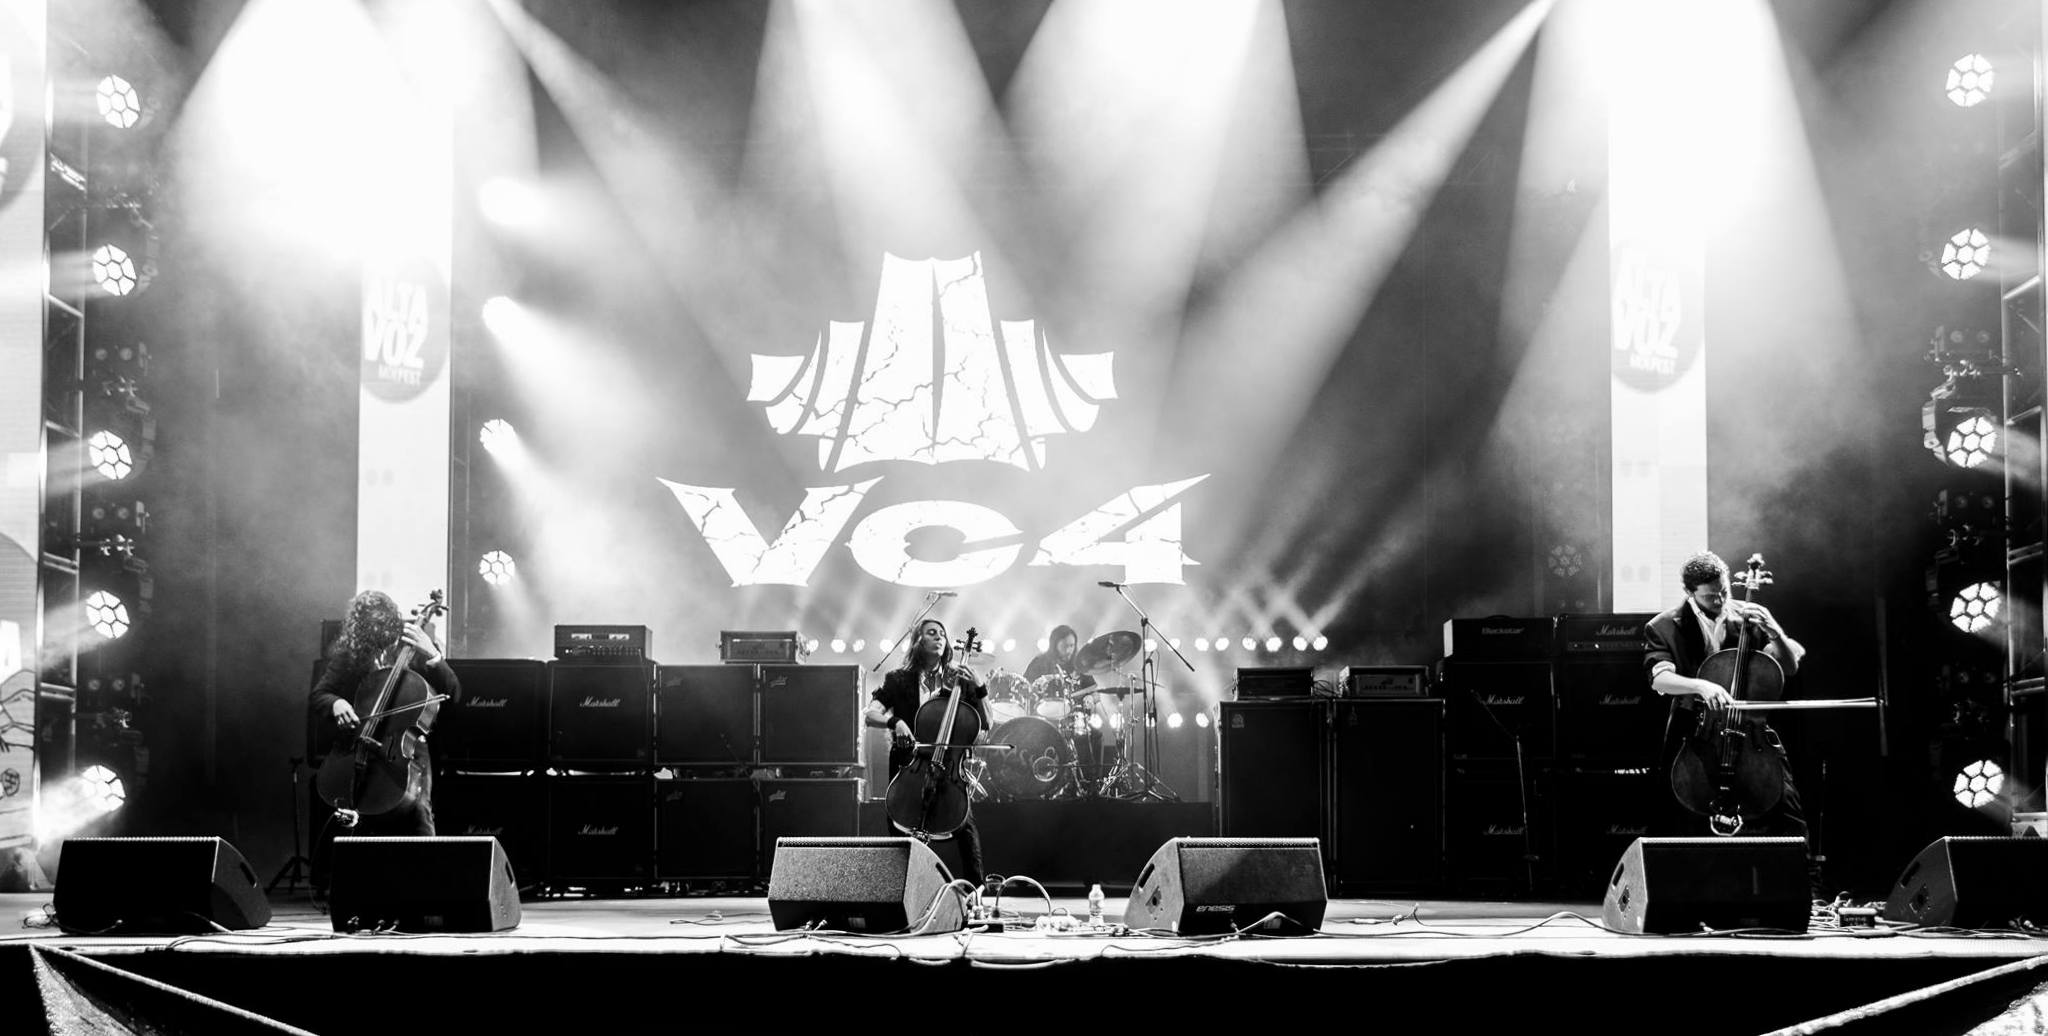 Vc4 lanza su disco "Vesania"